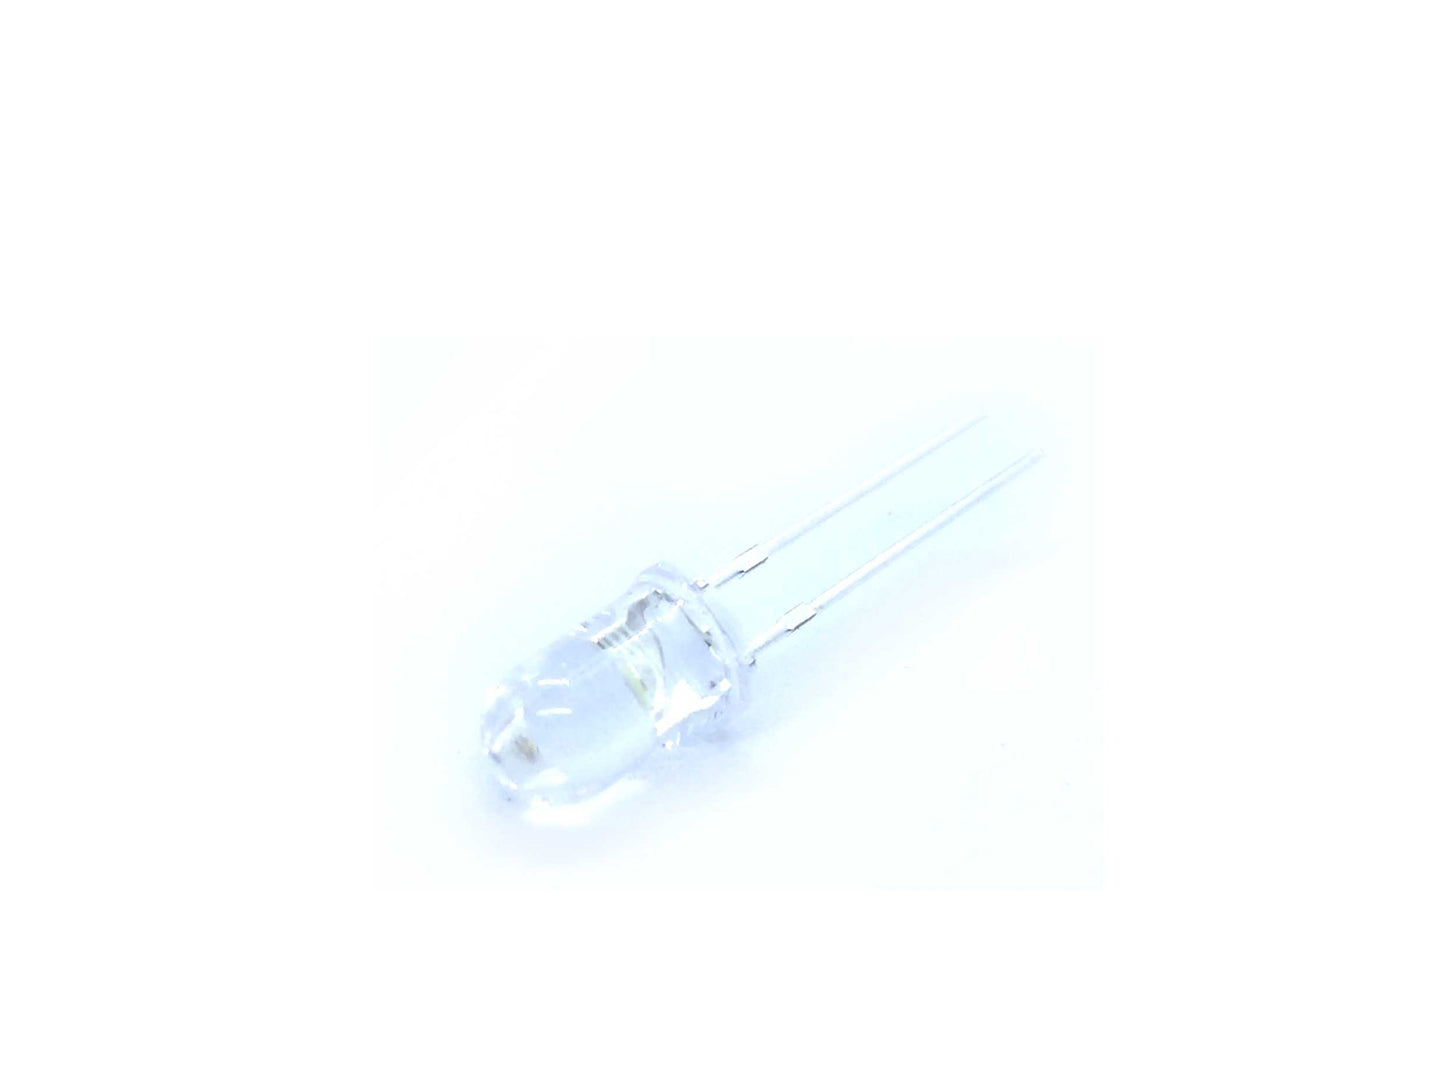 LED 5mm White 5PCS